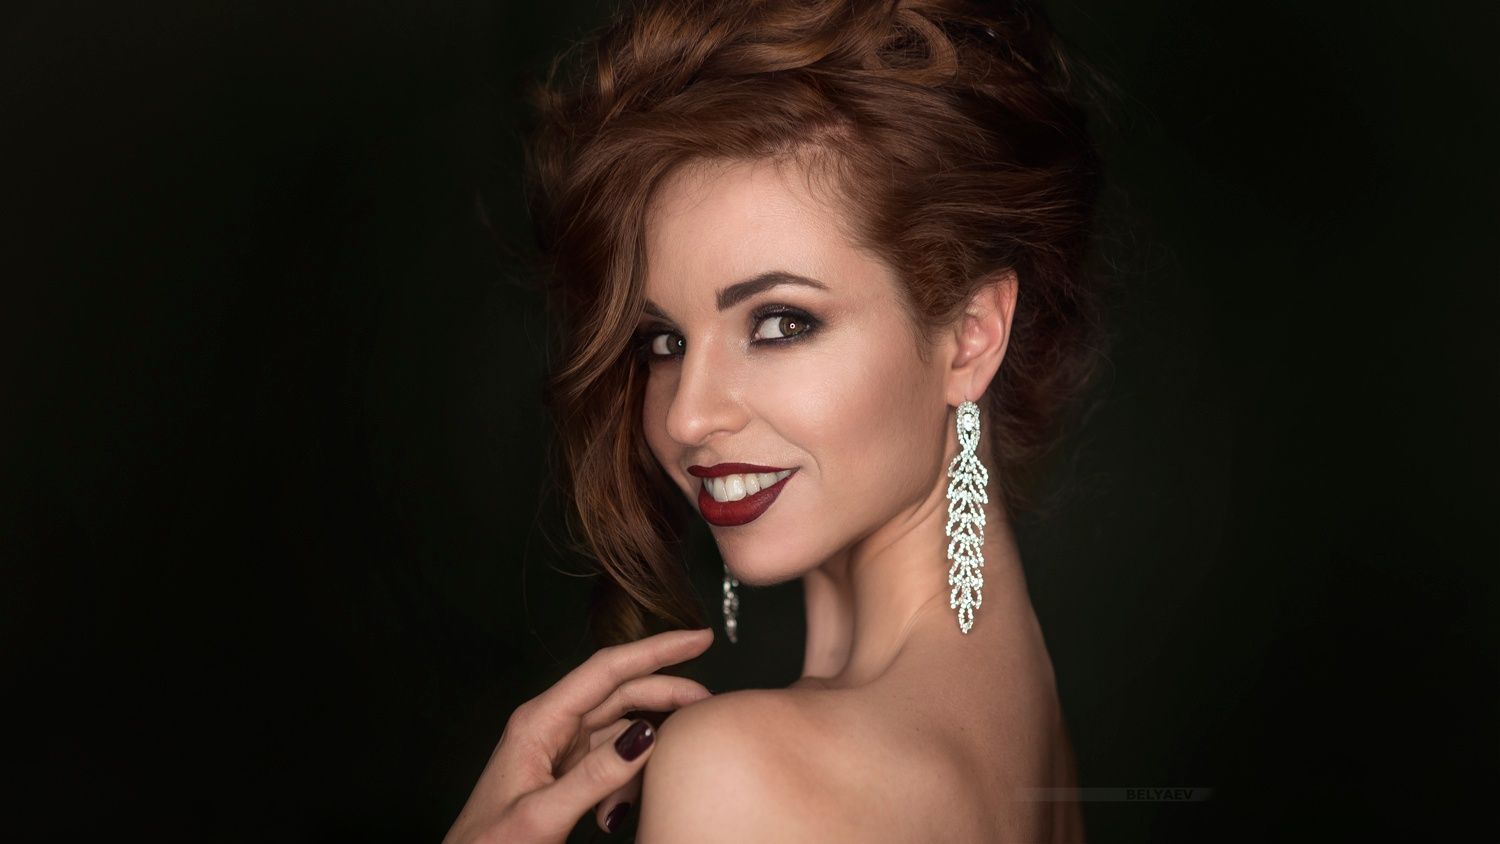 Dmitry Belyaev Women Brunette Smiling Make Up Portrait Red Lipstick 1500x844